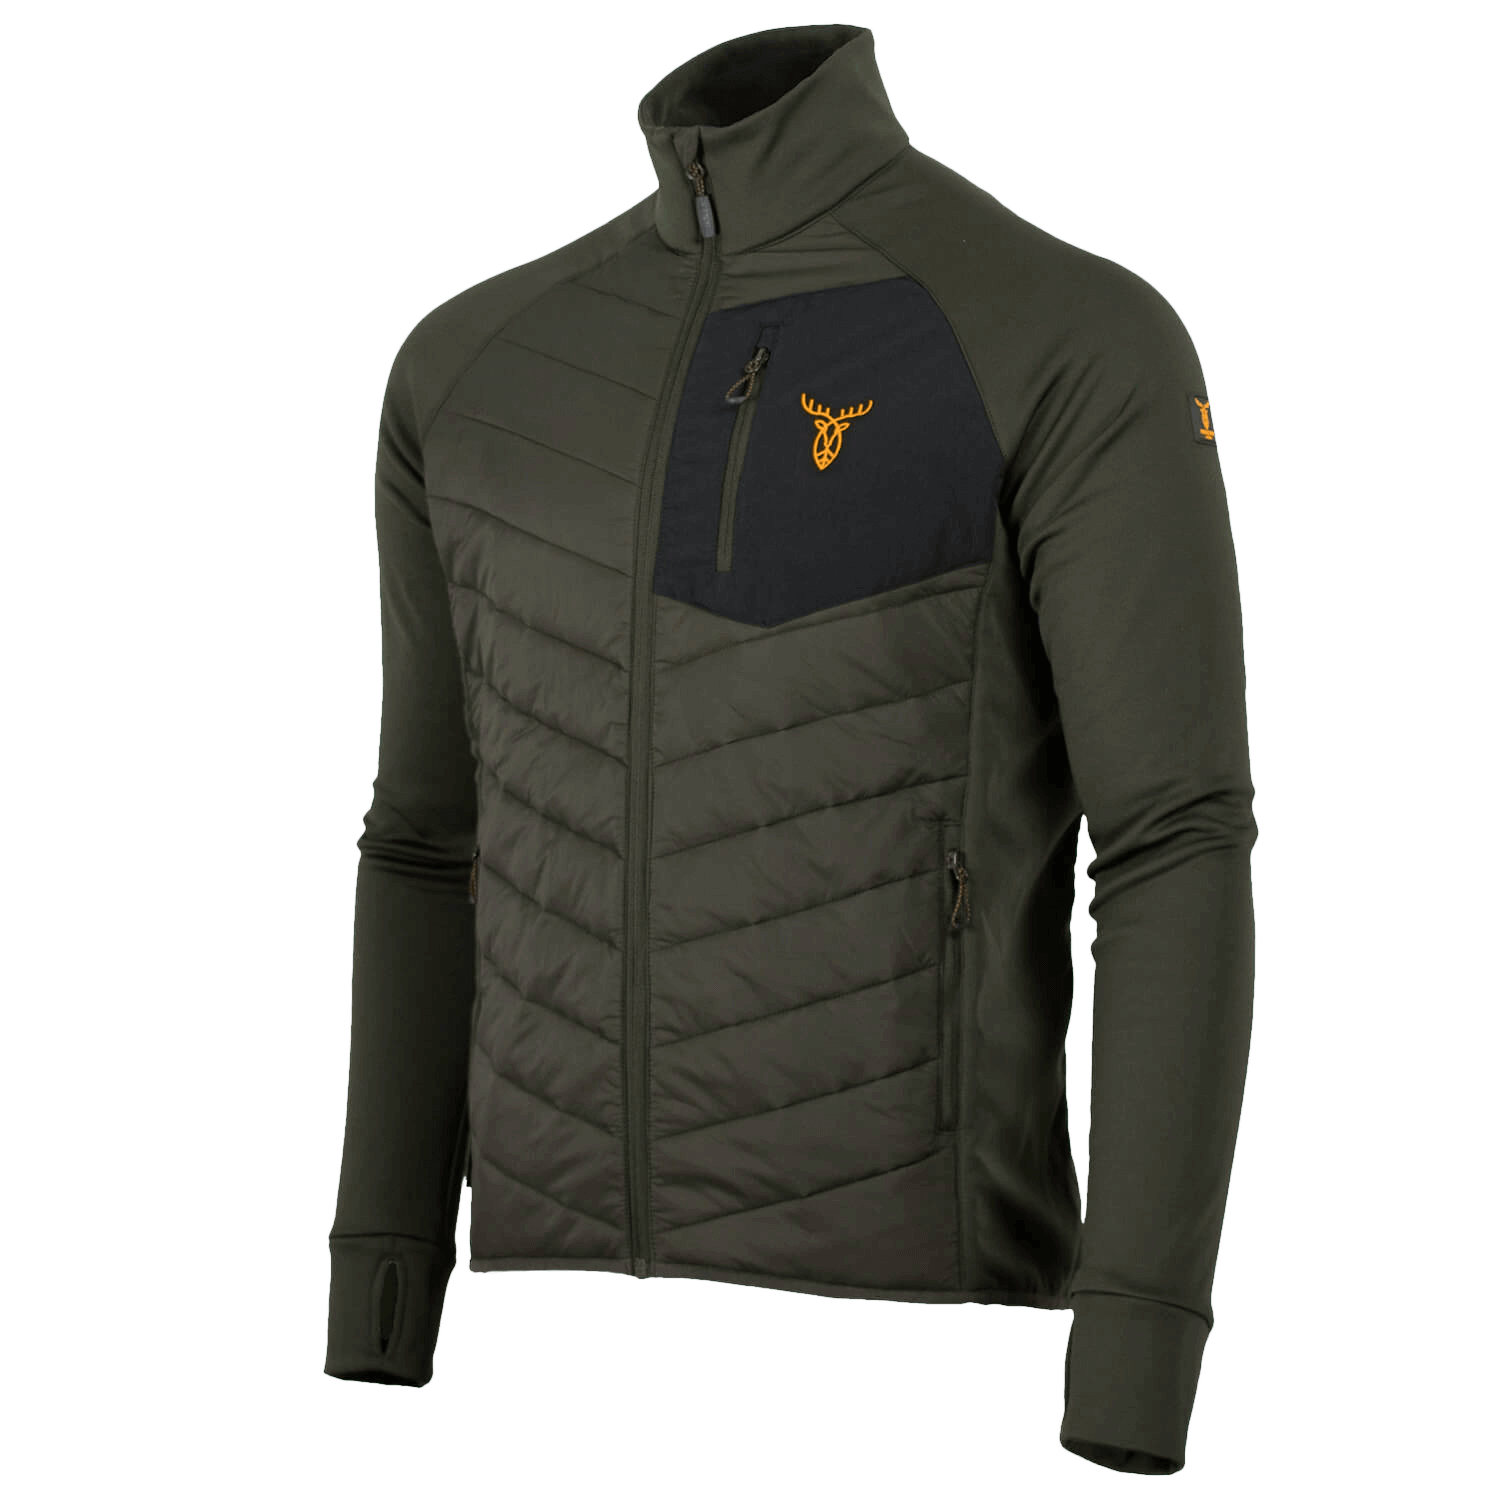 Pirscher Gear Hybrid-Fleece Jacket